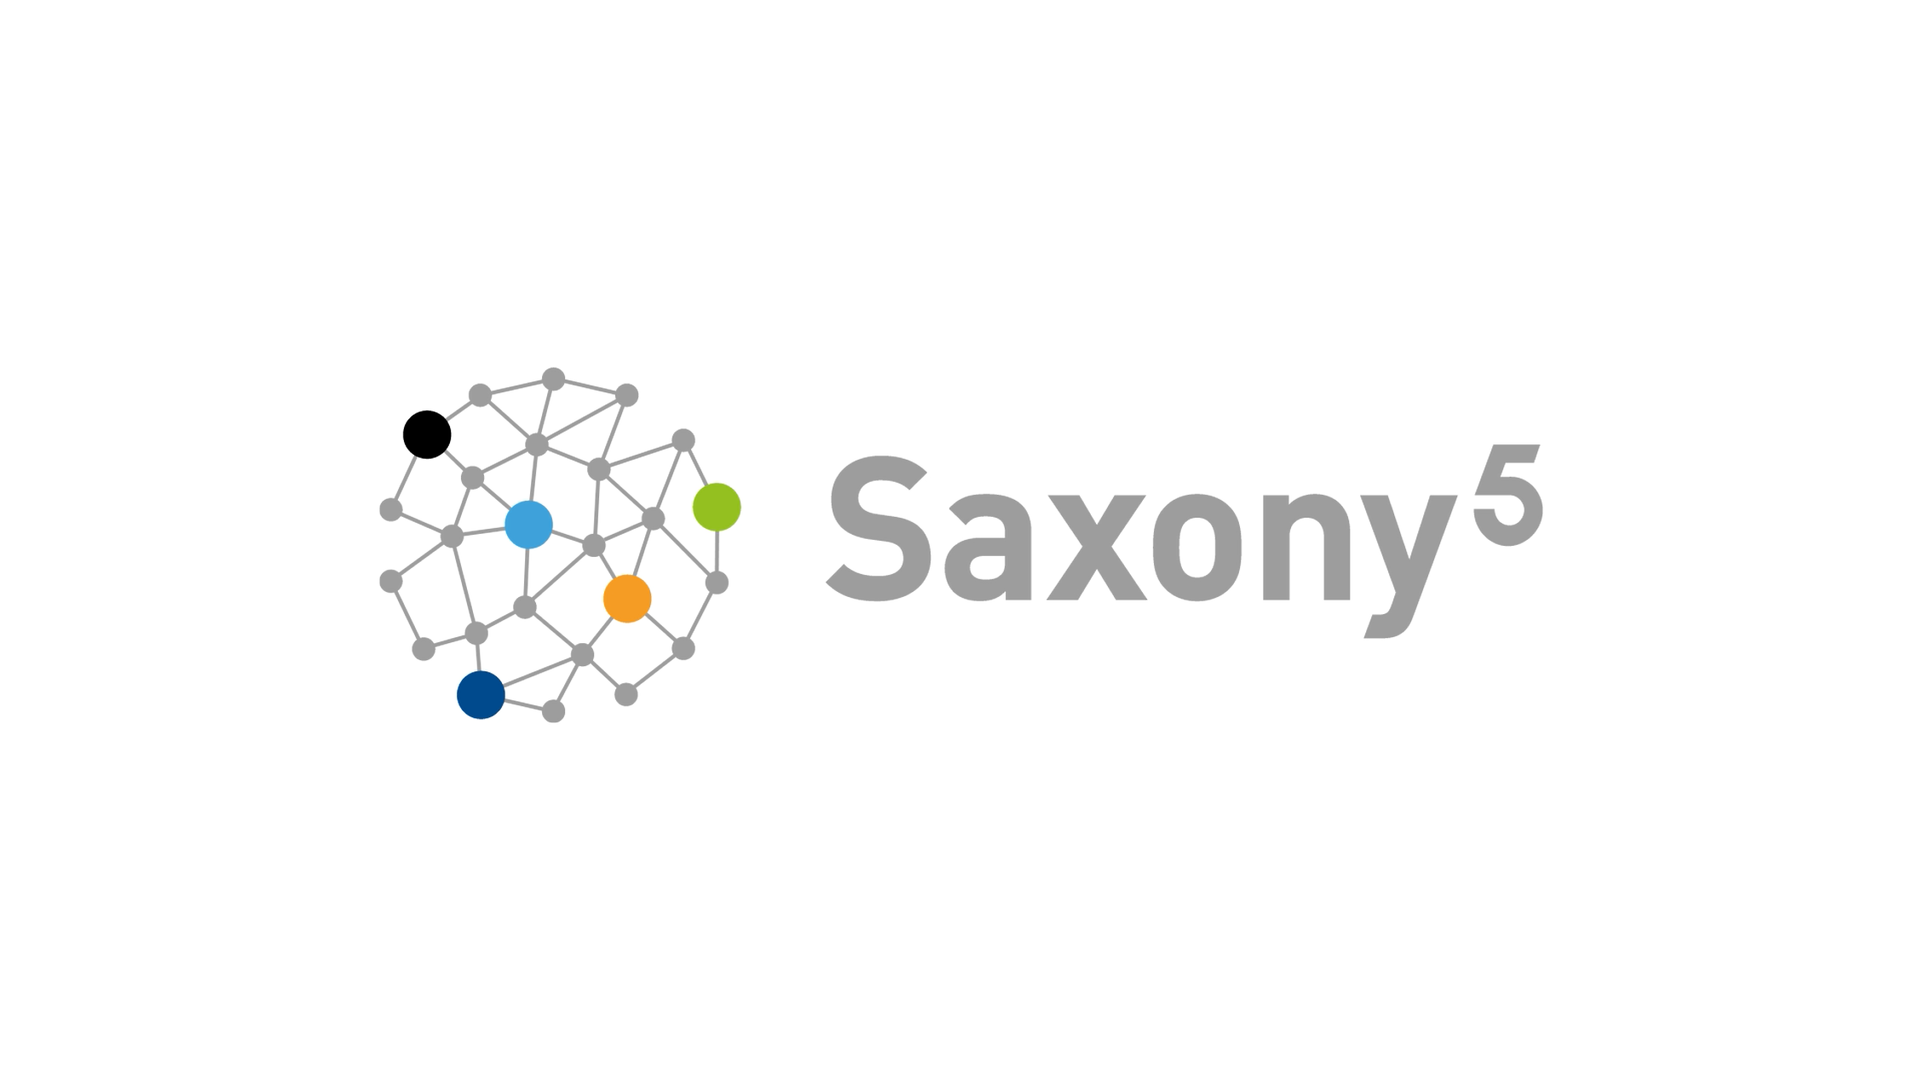 Saxony5-Co-Creation Labs – Anwendungsbereite Lösungen für die Herausforderungen unserer Zeit